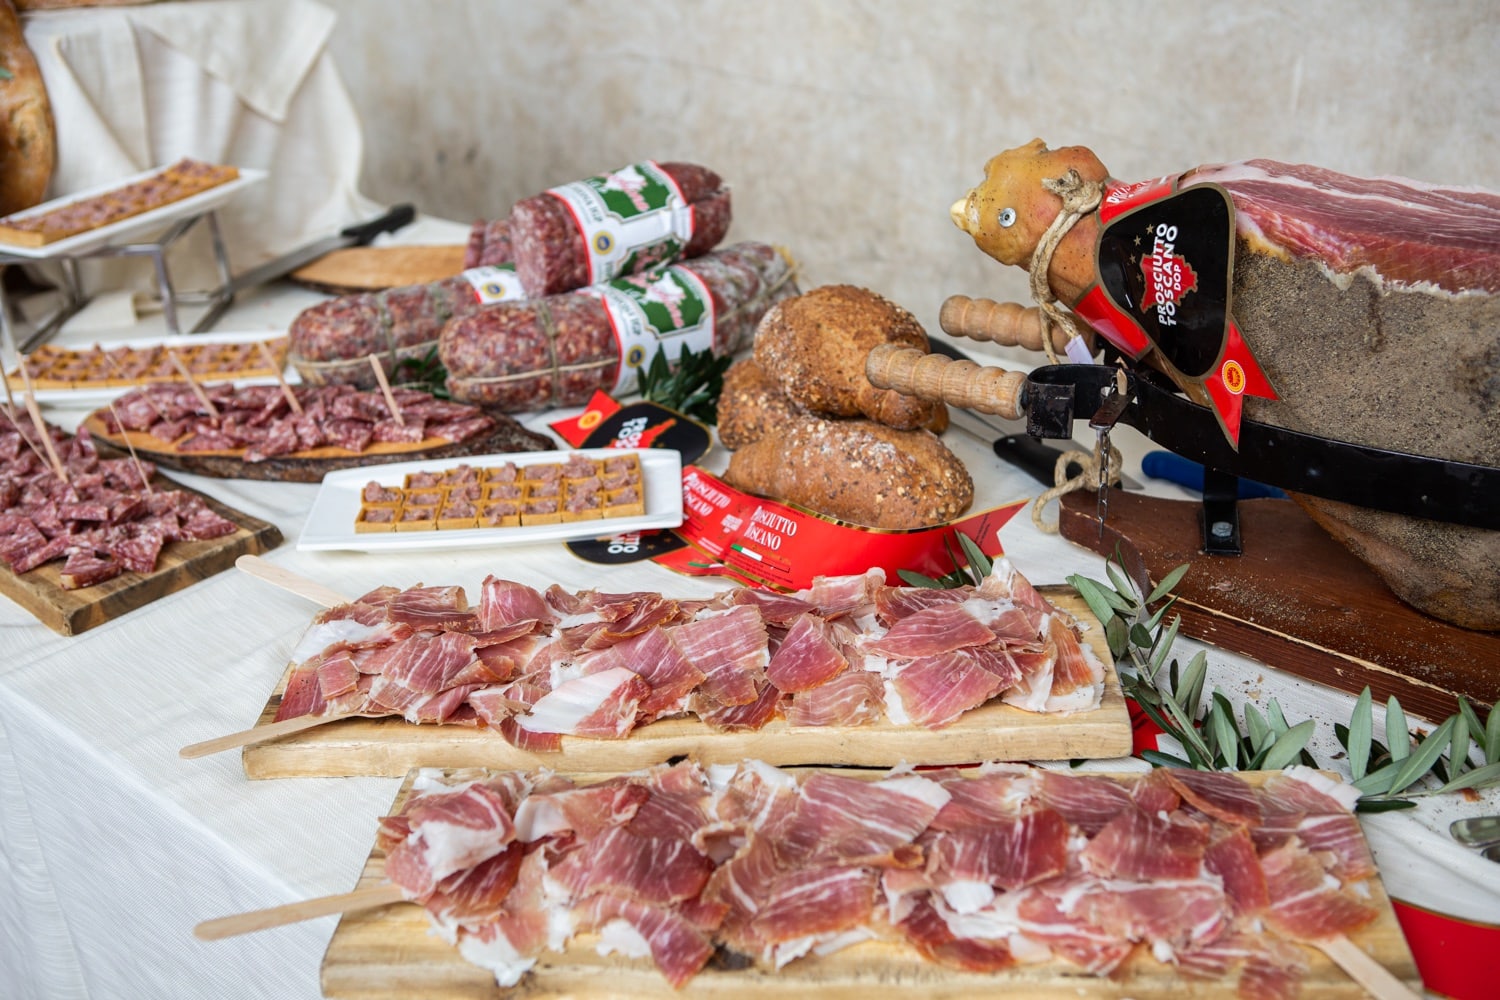 Buy Food Toscana 2022 Tavola Rotonda Ph Ilaria Costanzo 9361 1 